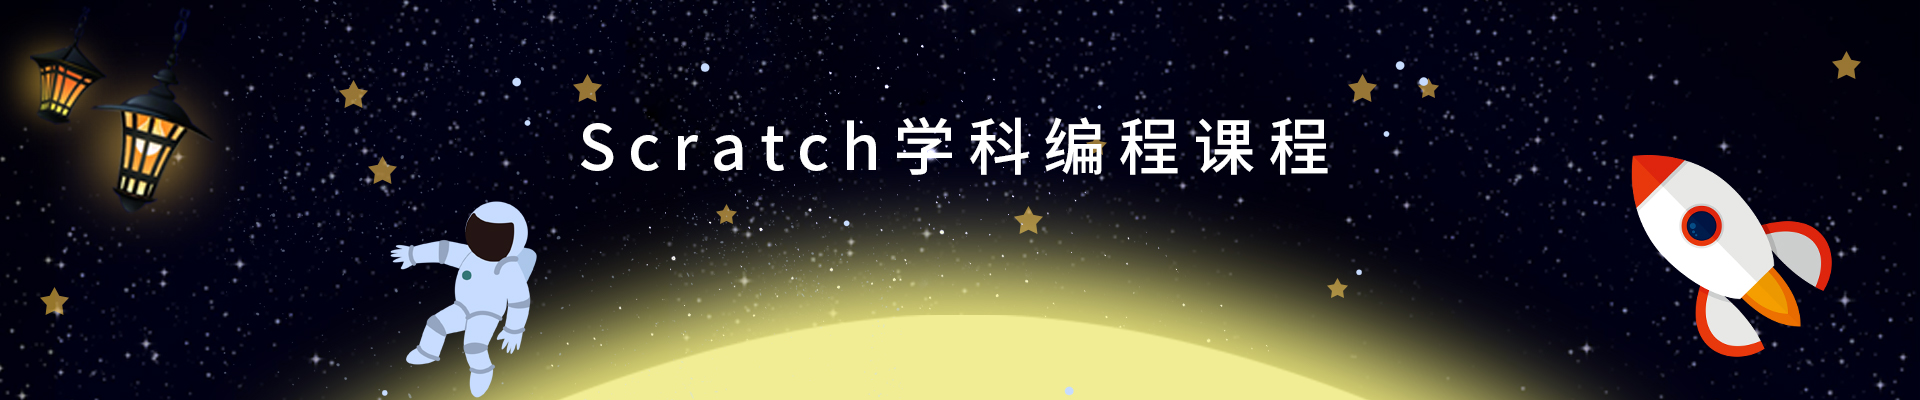 南京Scratch少儿编程